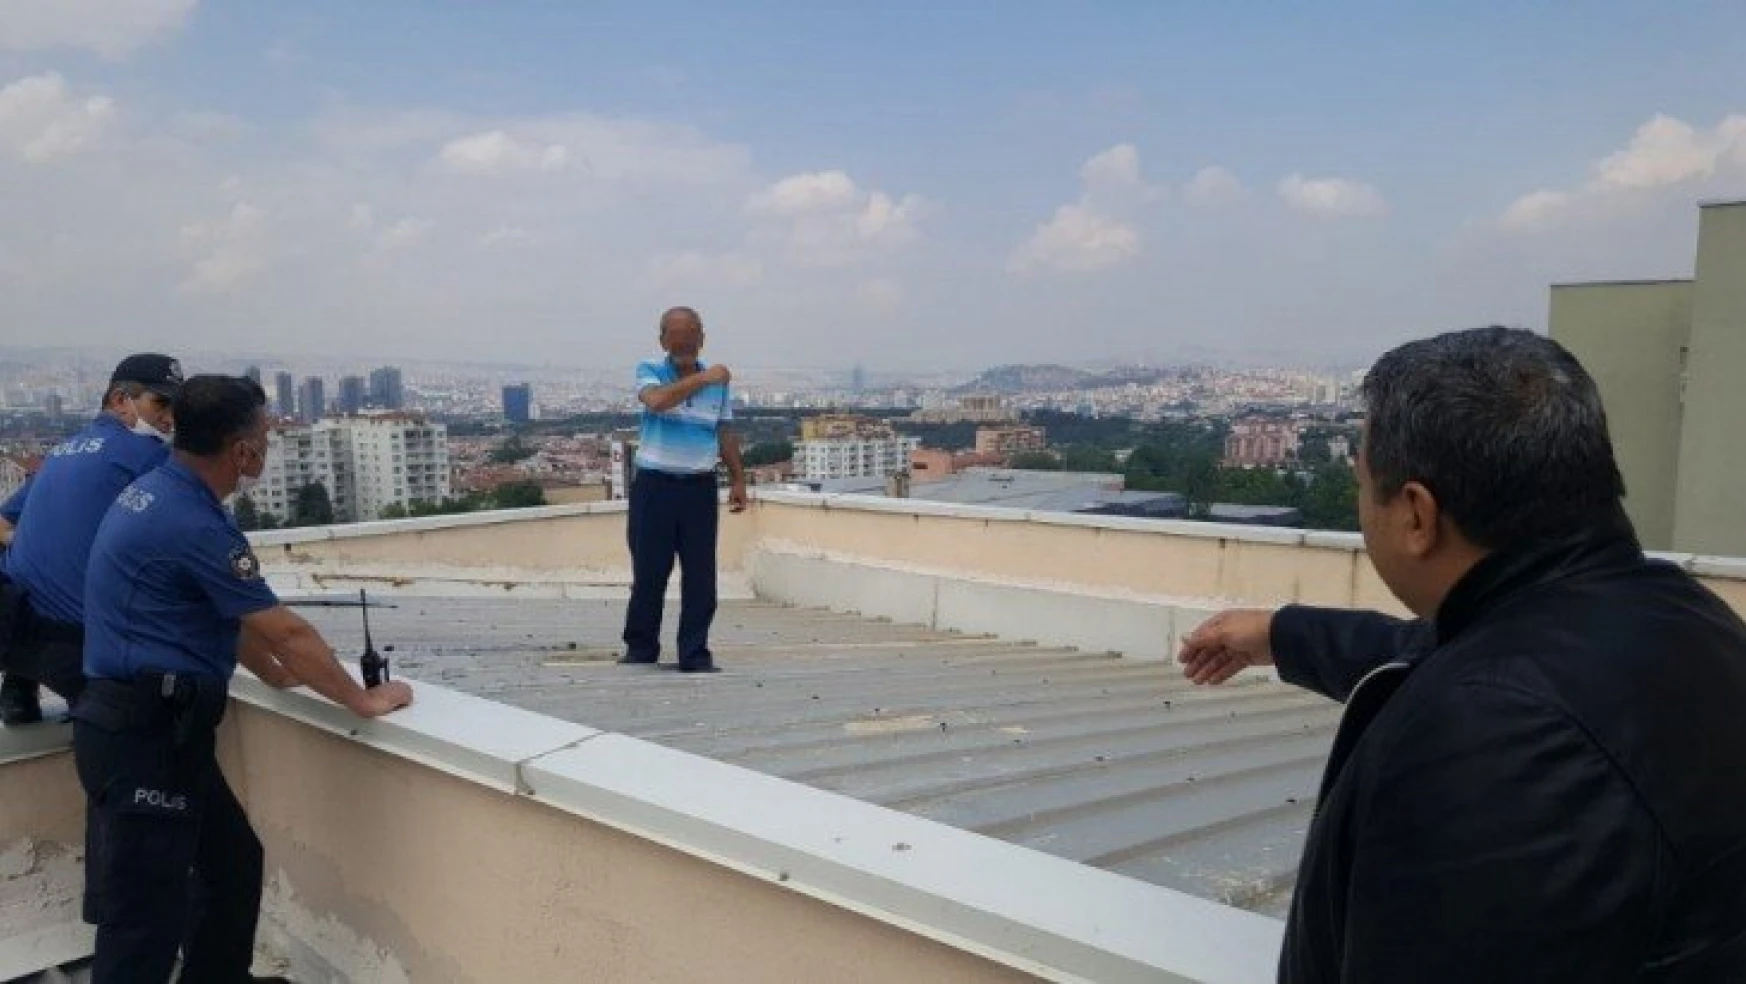 İntihar girişimi Milletvekili Fendoğlu engelledi